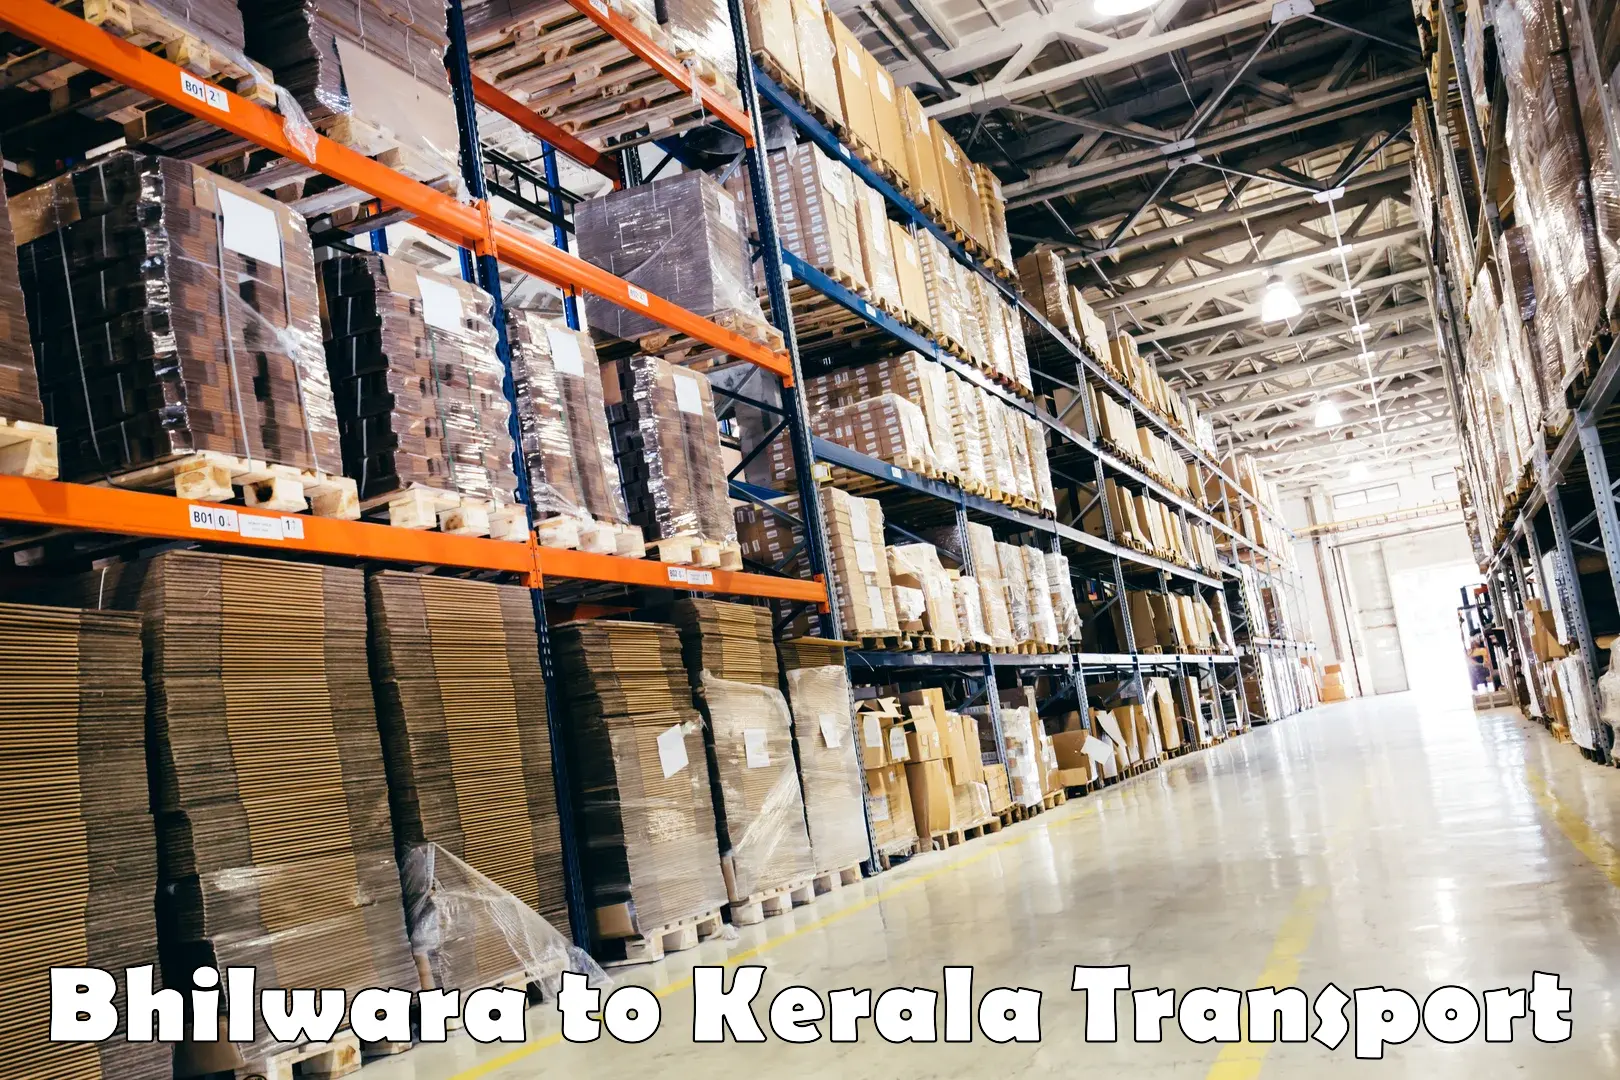 Nationwide transport services Bhilwara to Kerala